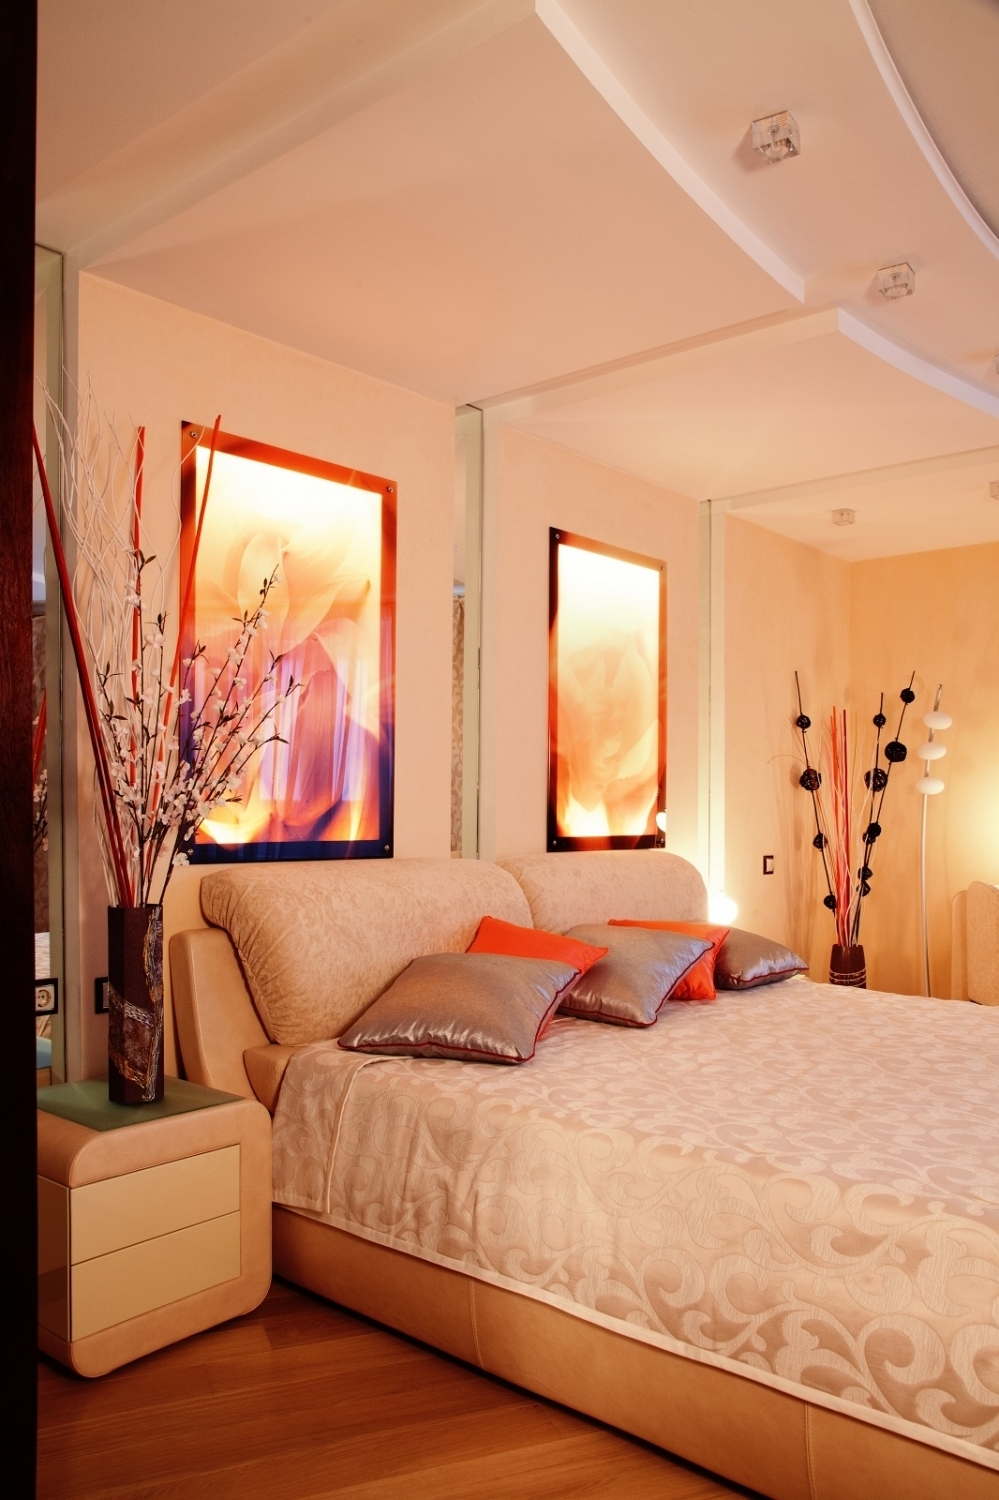 Квартира, в интерьере которой доминируют минимализм, простота и практичность